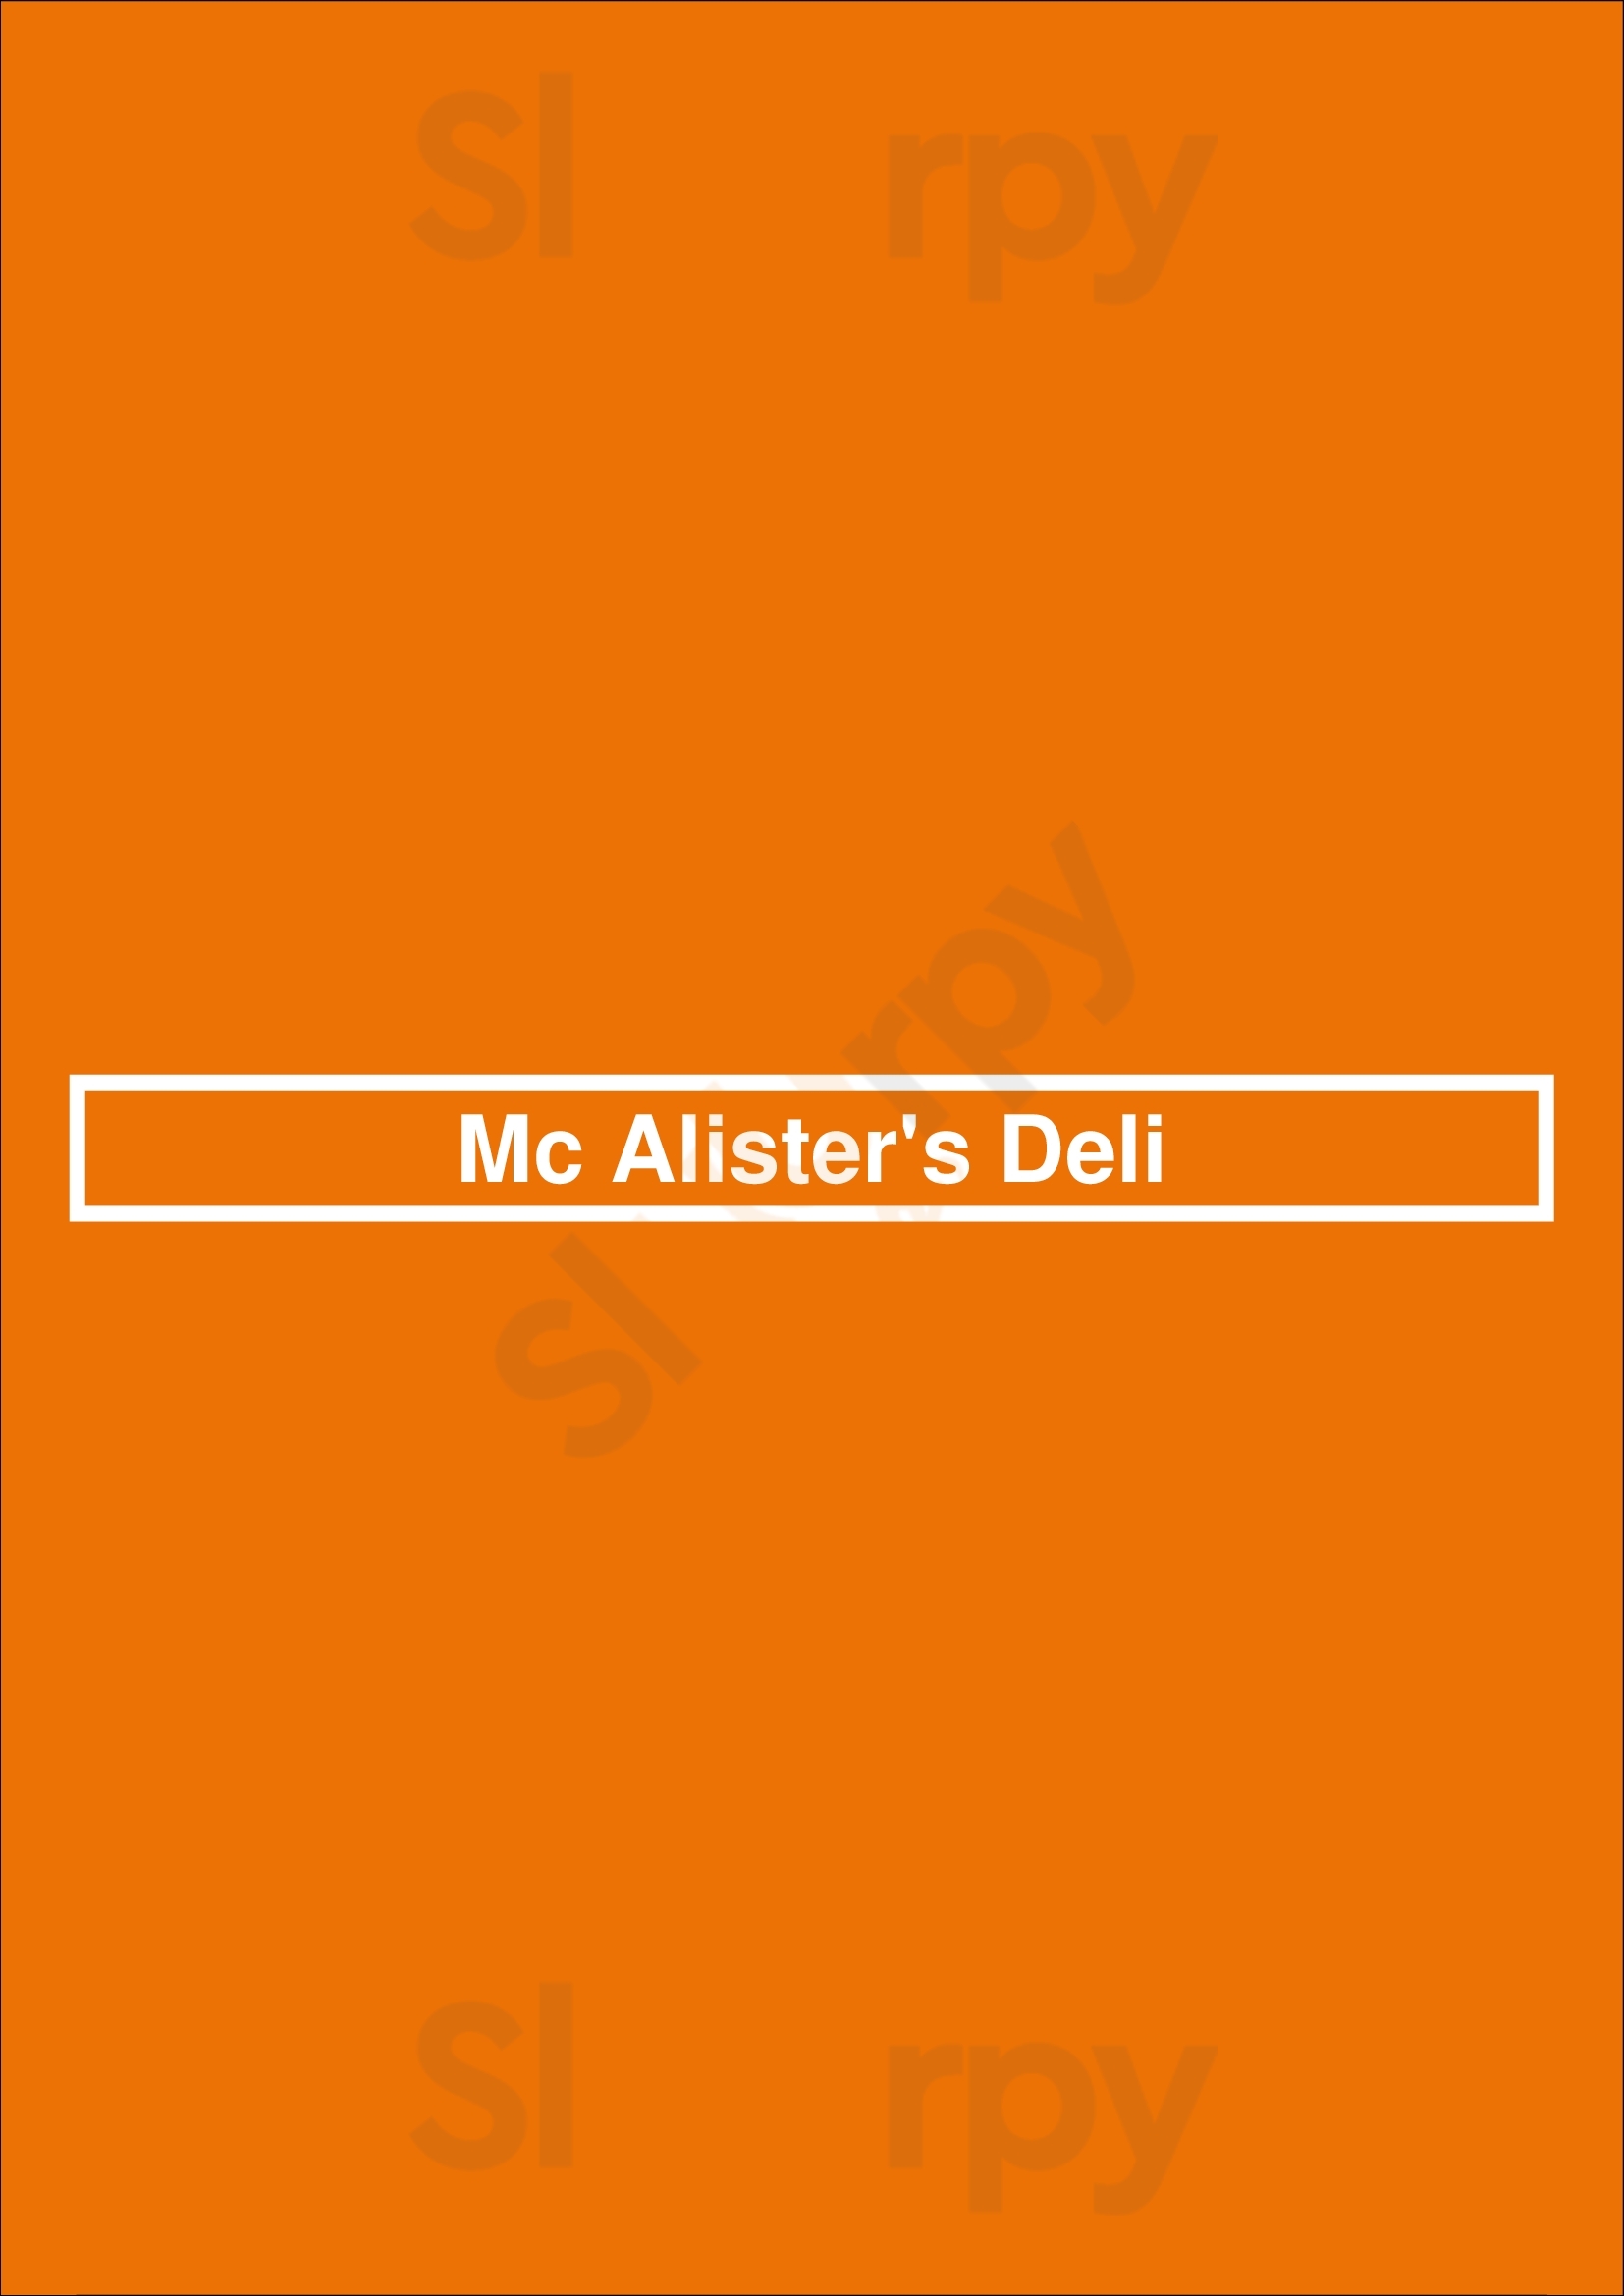 Mcalister's Deli Charlotte Menu - 1